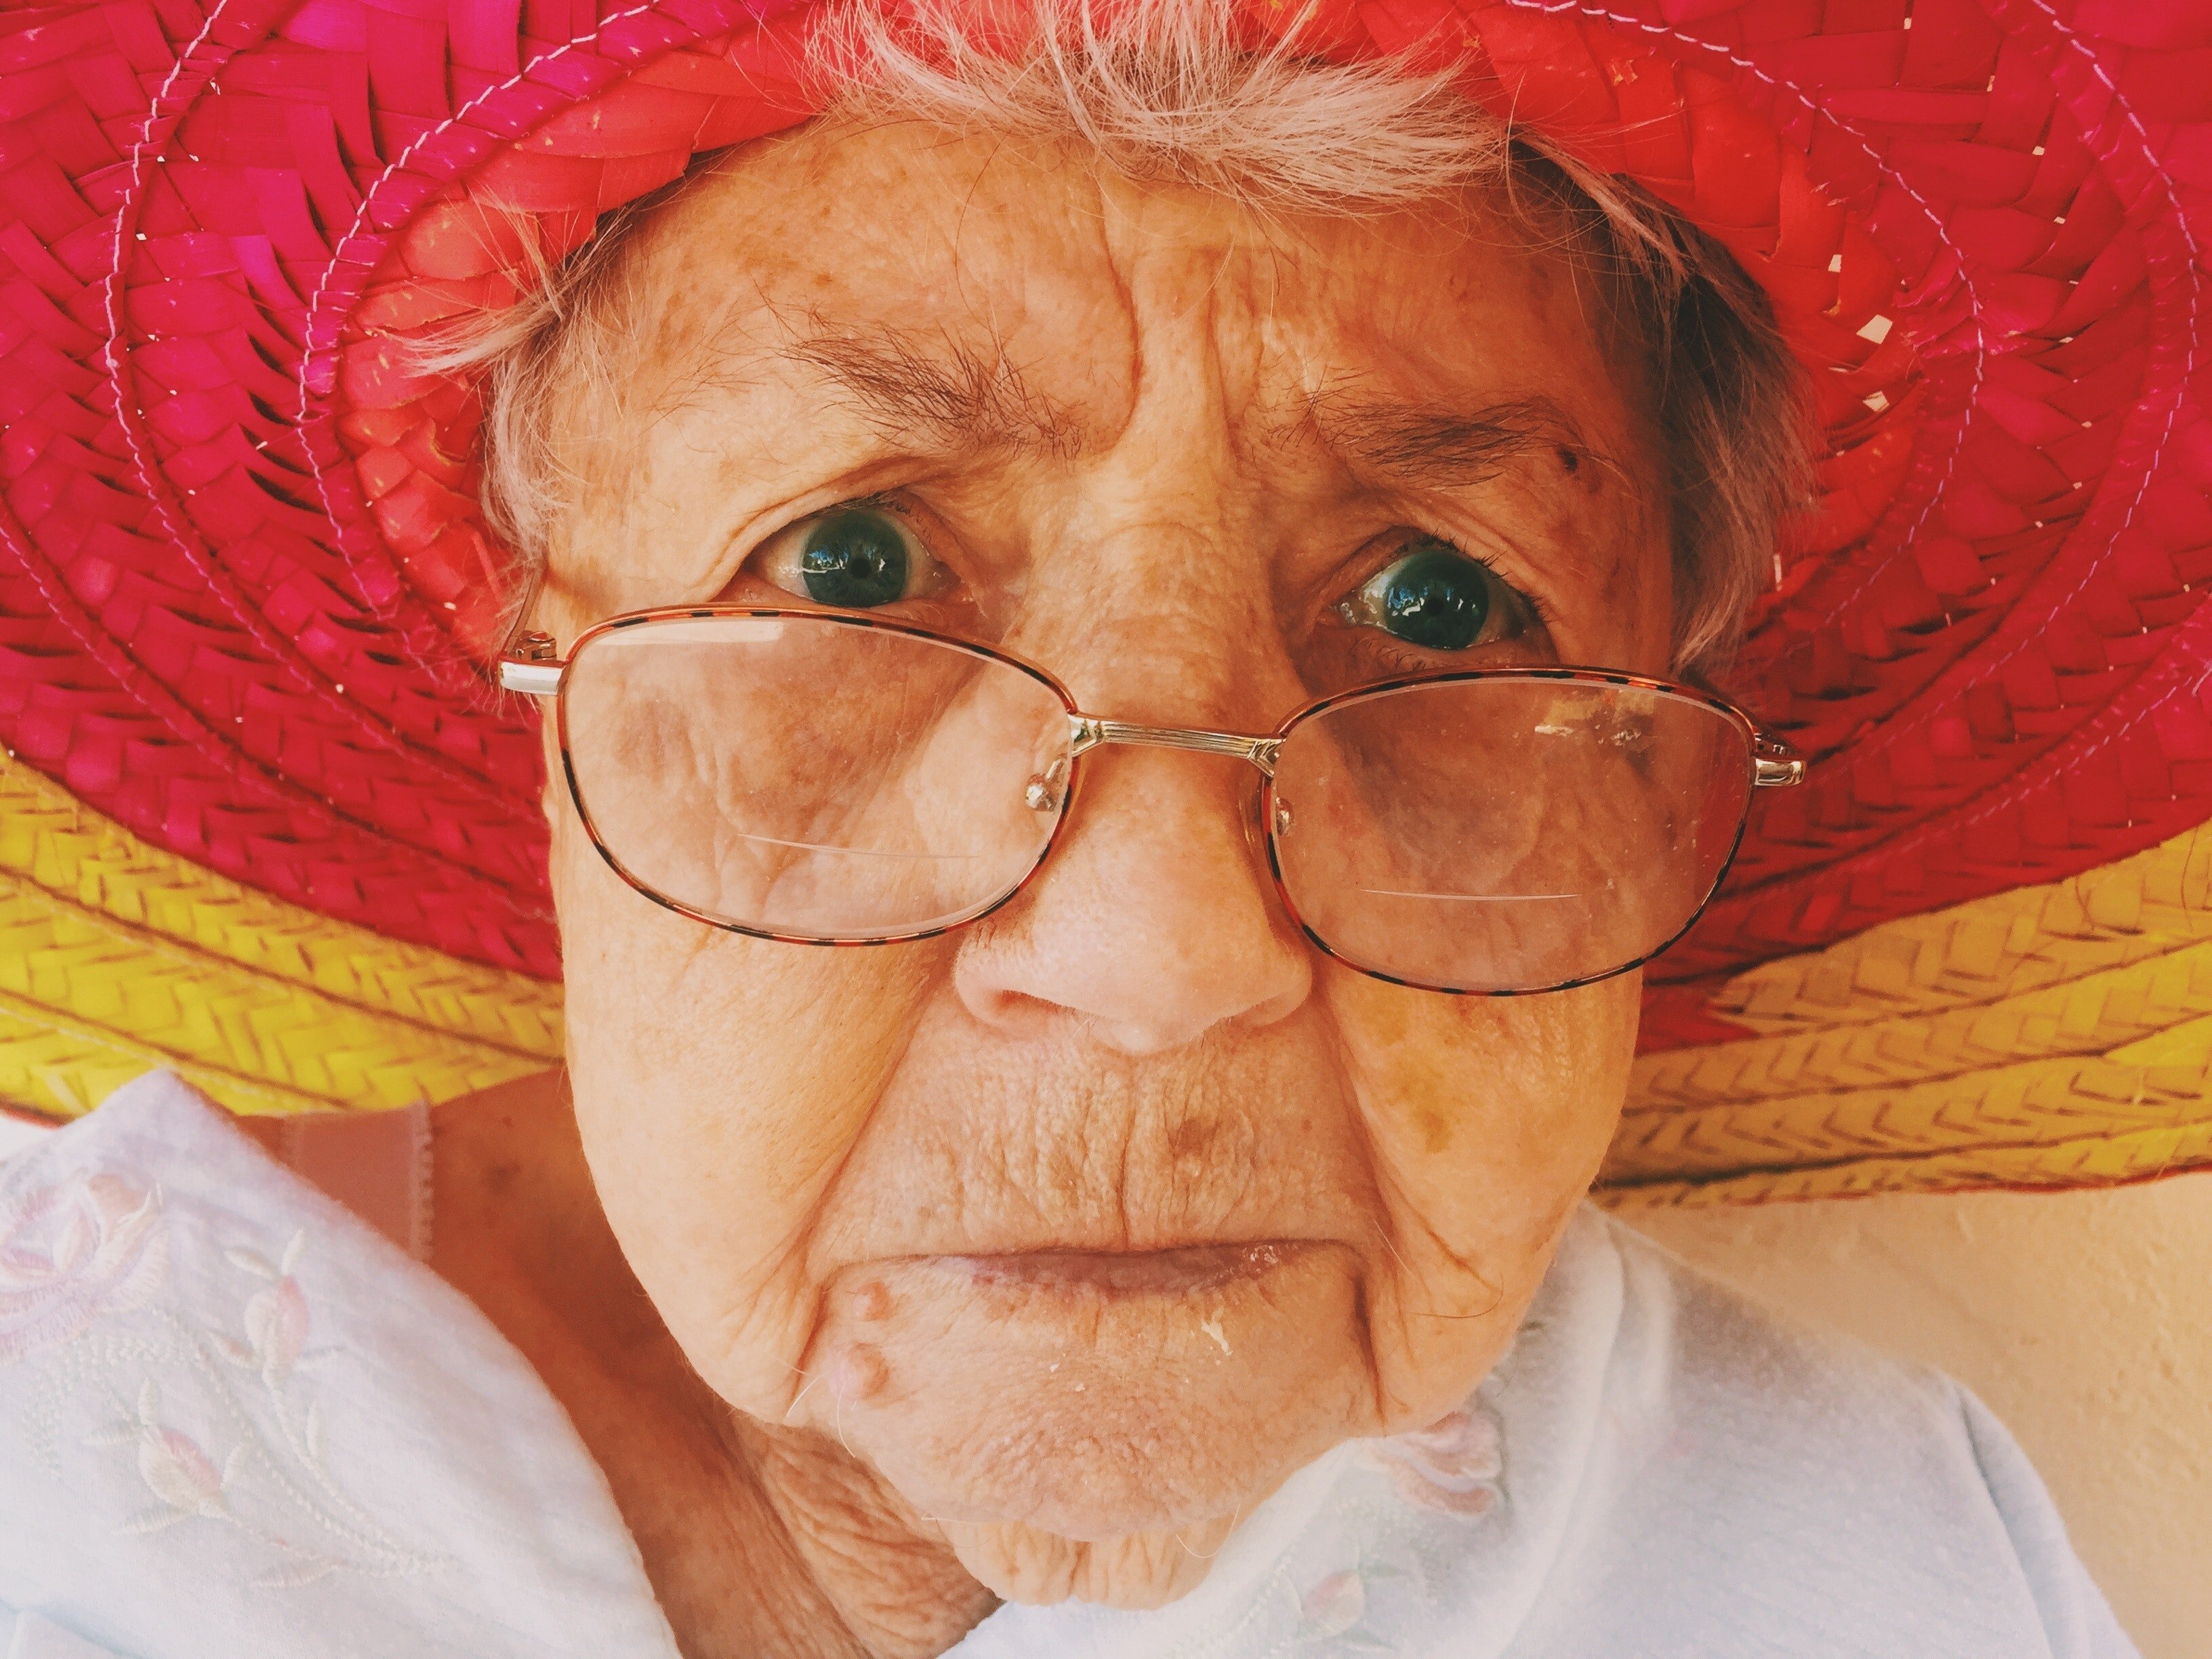 Die alte Frau erkannte Jakob. | Quelle: Pexels